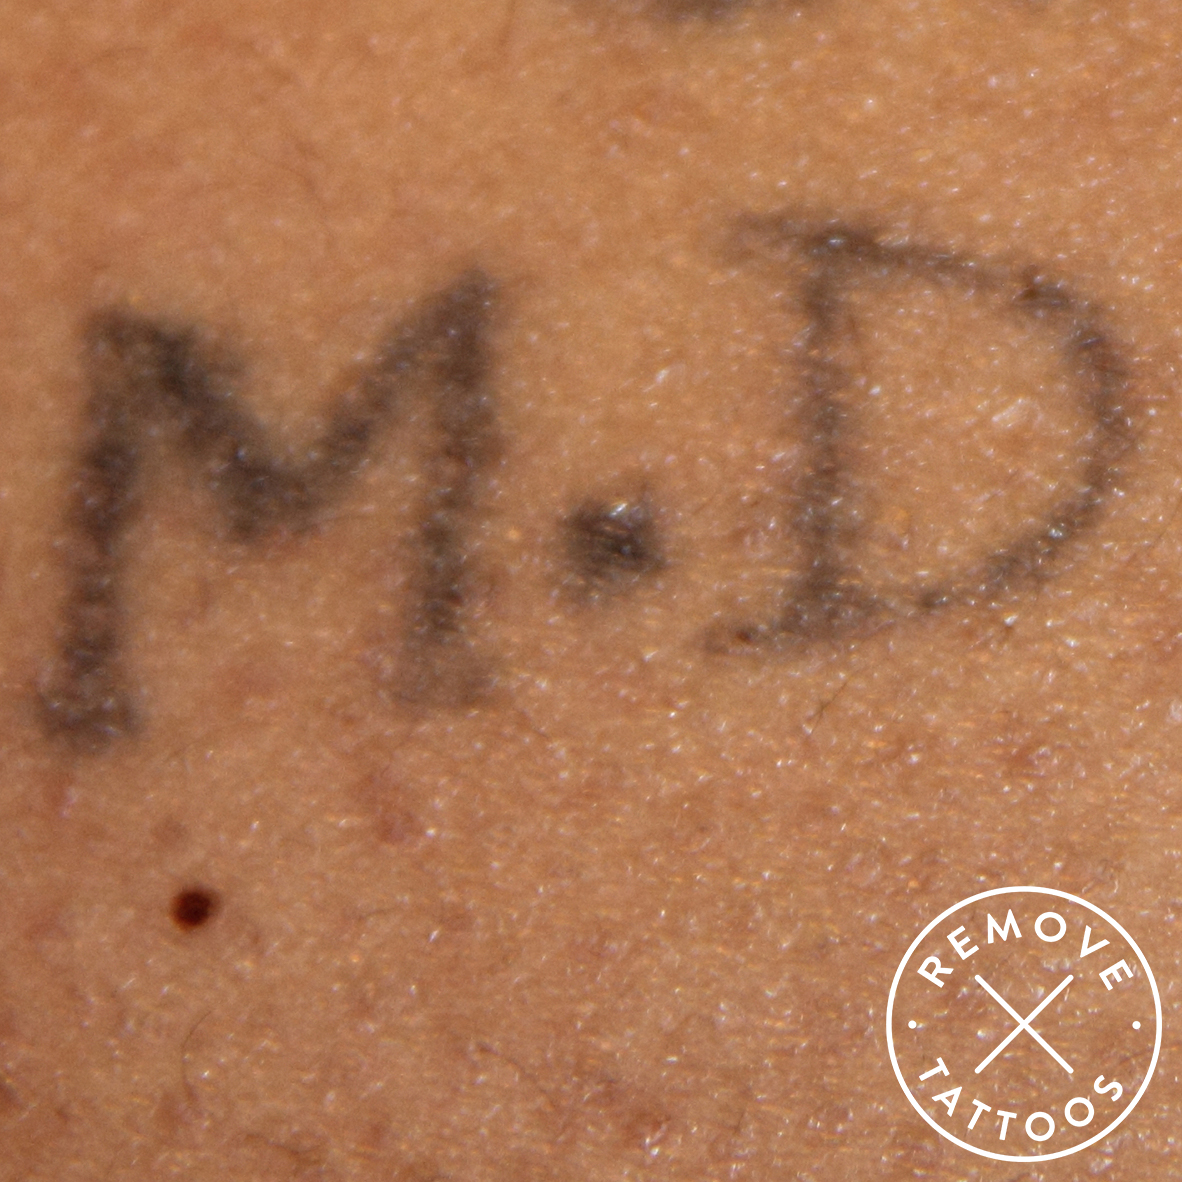 Bild före behandling - Remove Tattoos